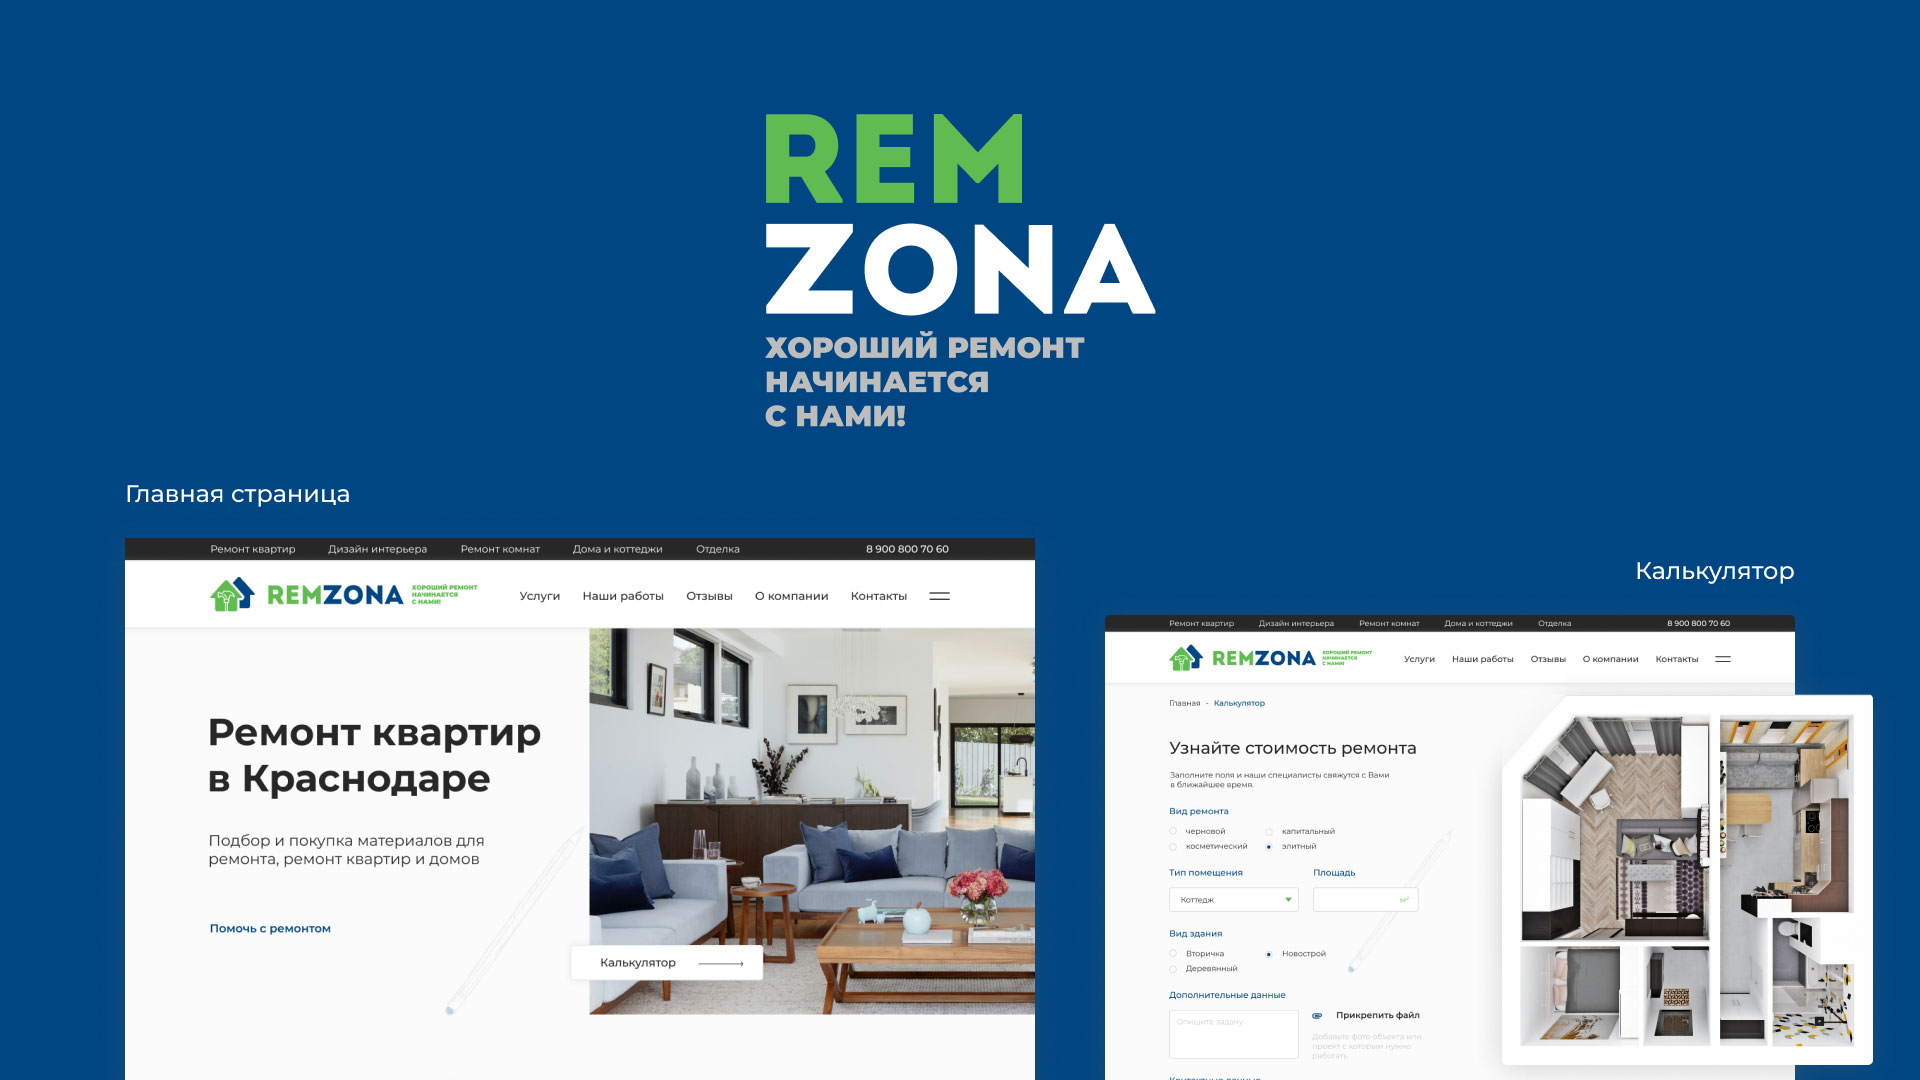 Разработка сайта компании «REMZONA» в 